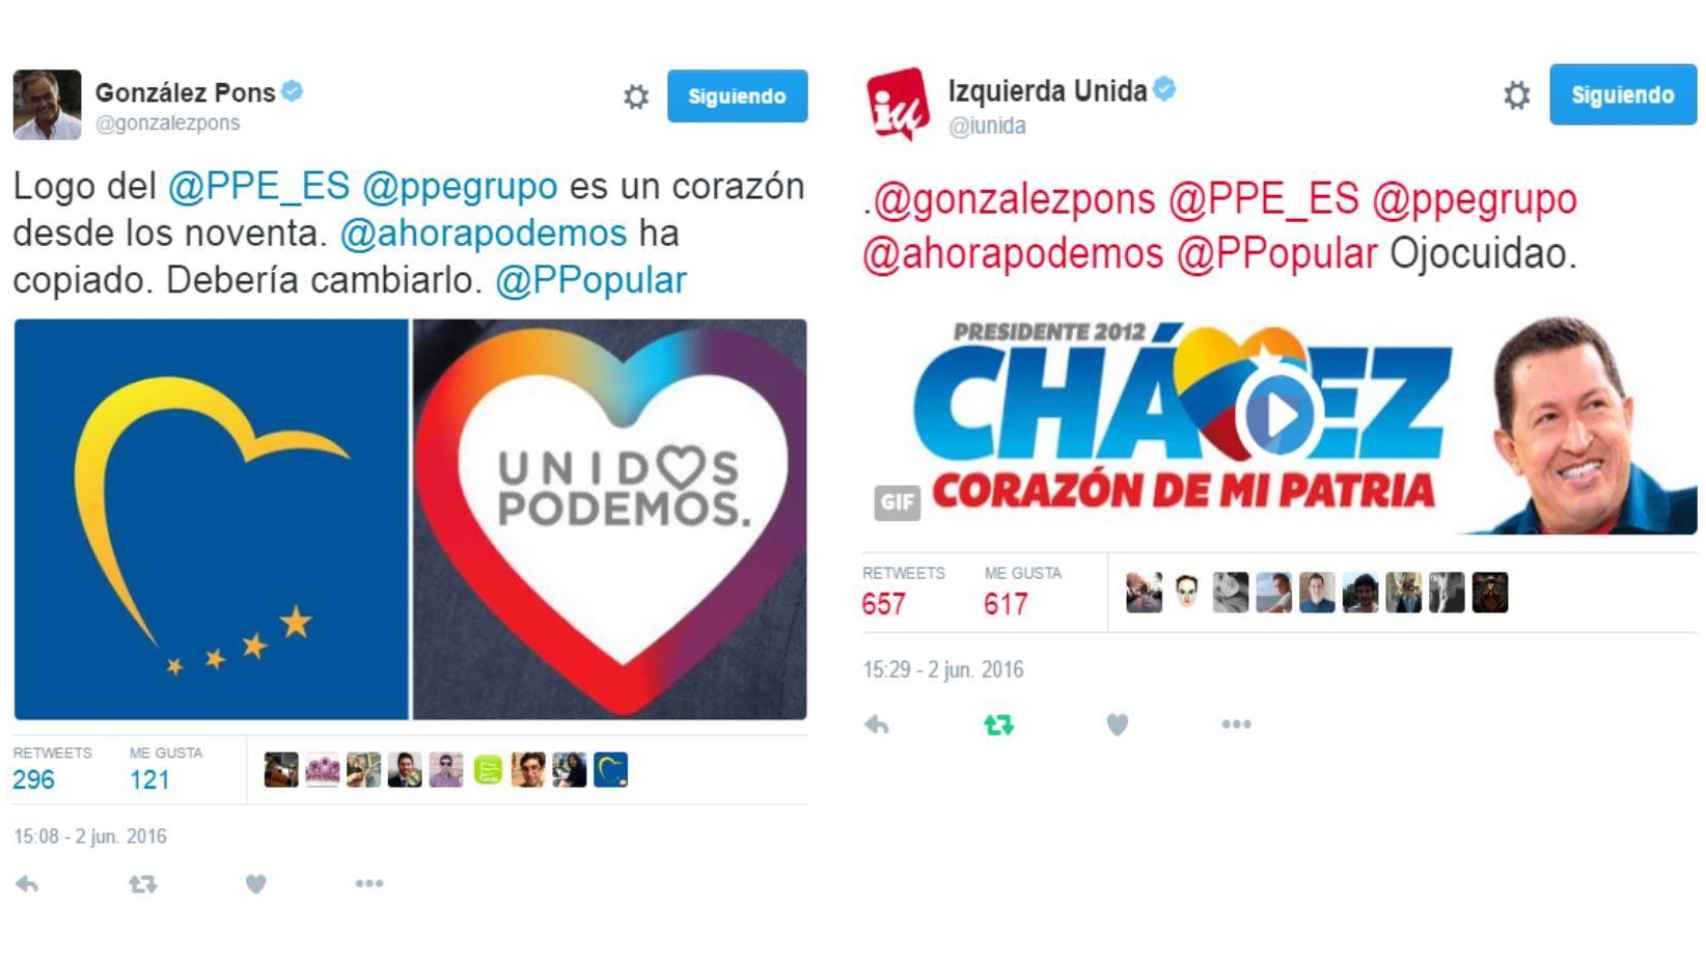 Los tuits cruzados de González Pons e IU